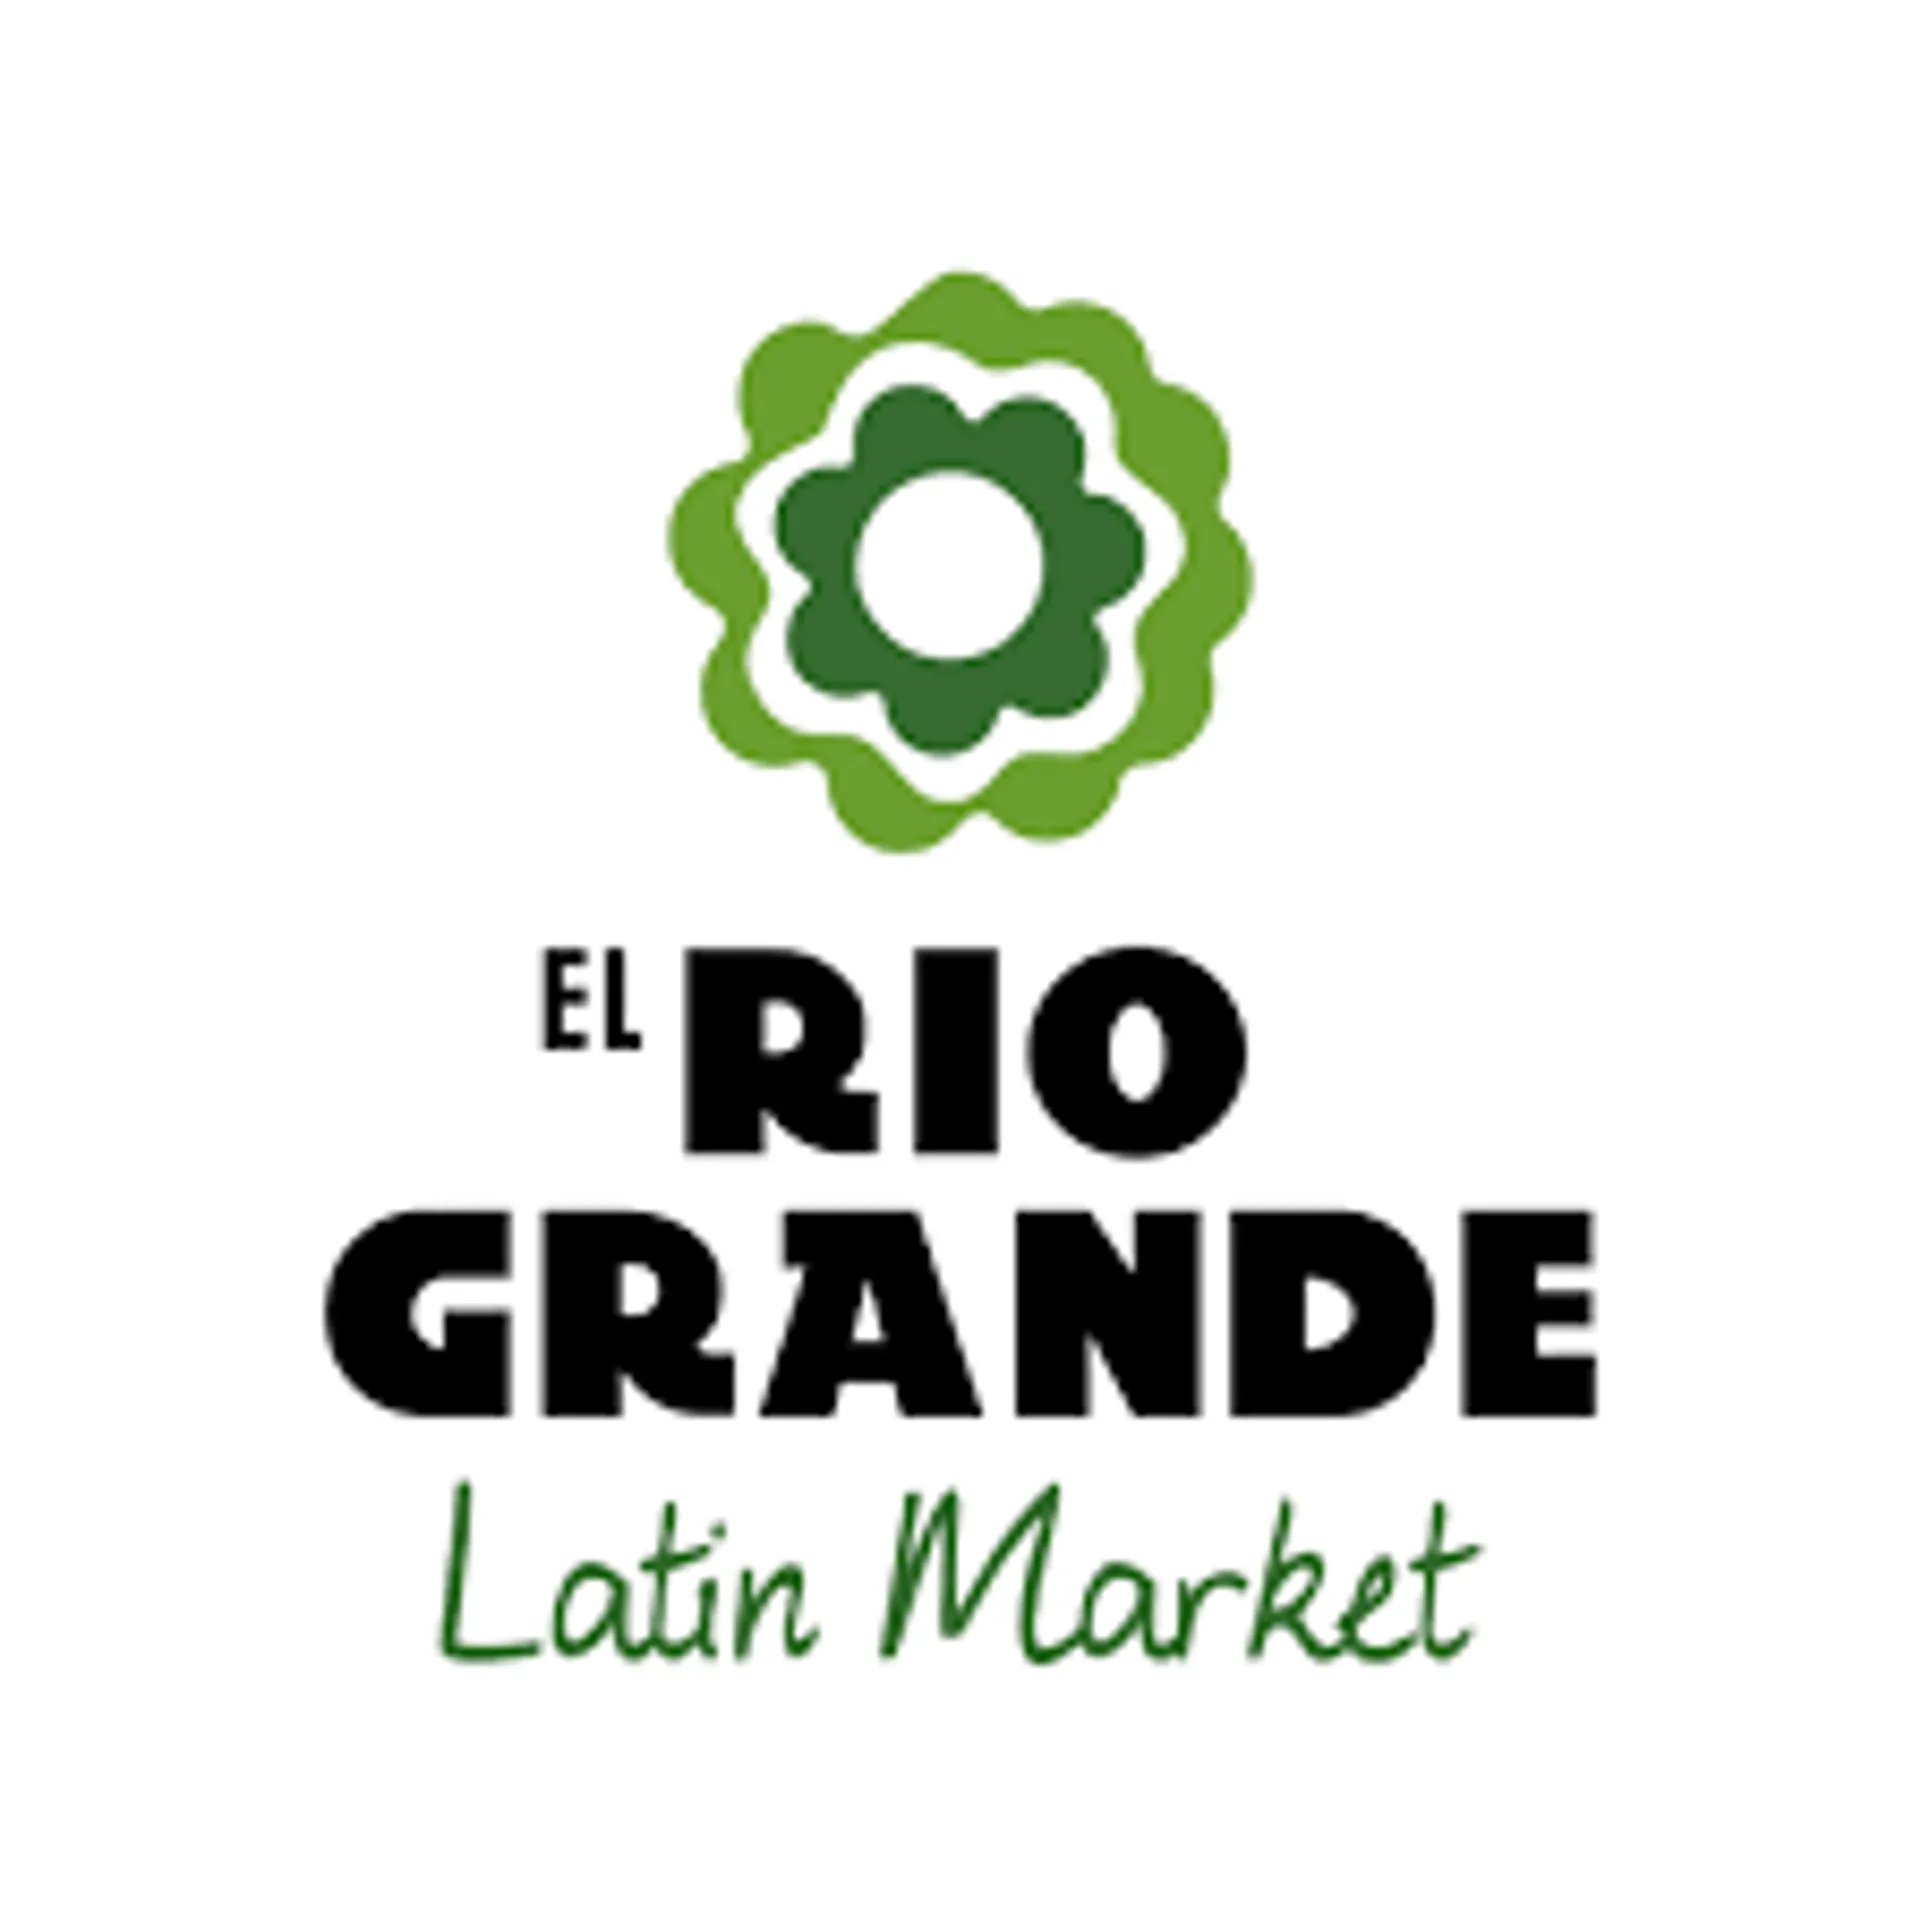 EL RIO GRANDE LATIN MARKET logo de catálogo